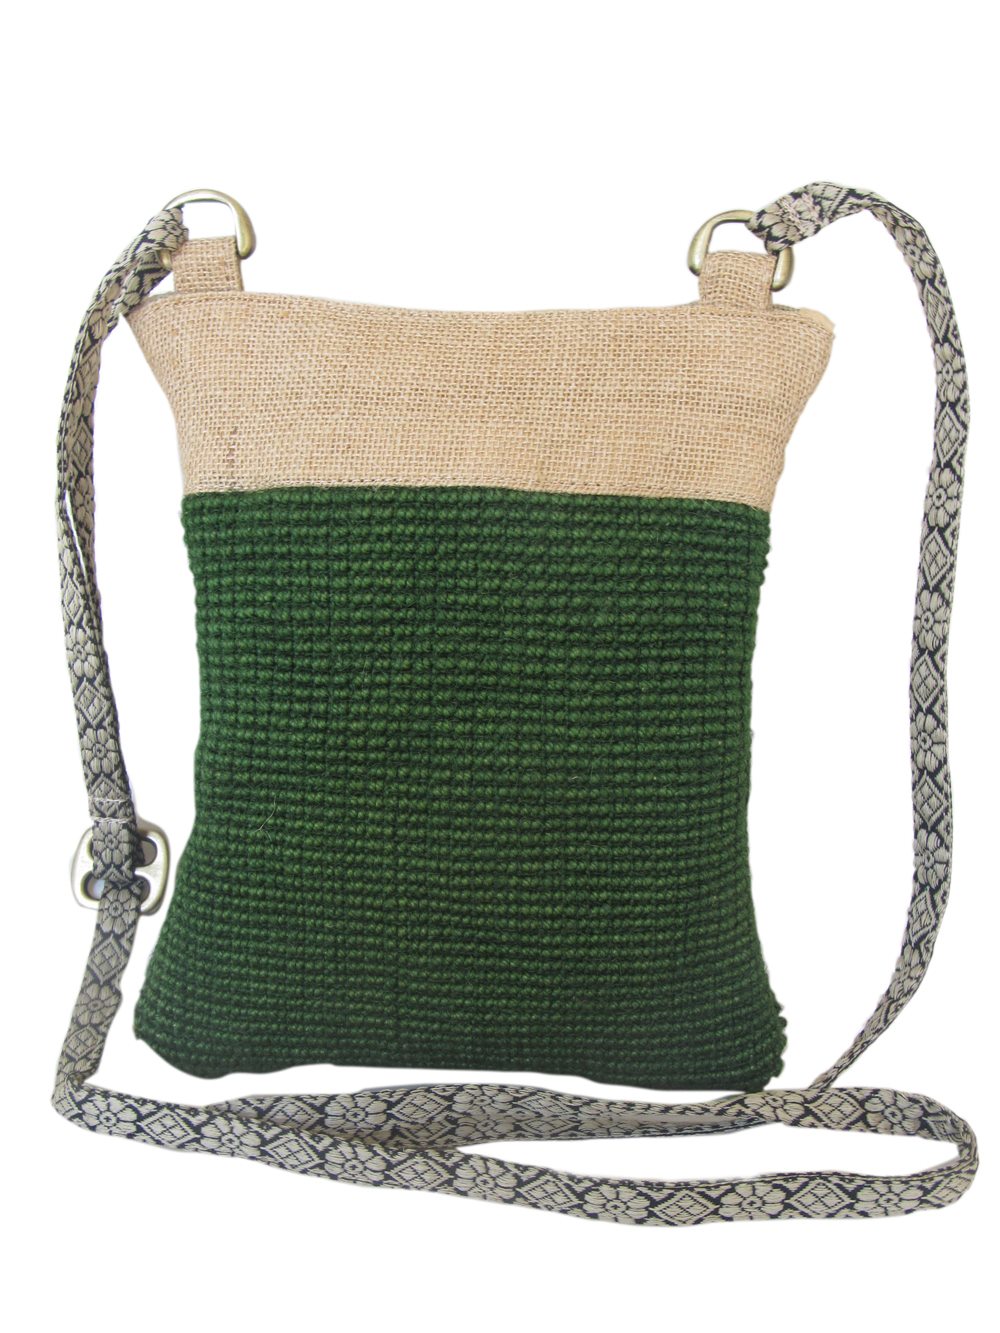 Leaf & Fiber Kindle Eco-Friedly Cross-Body Bag - Olive Green